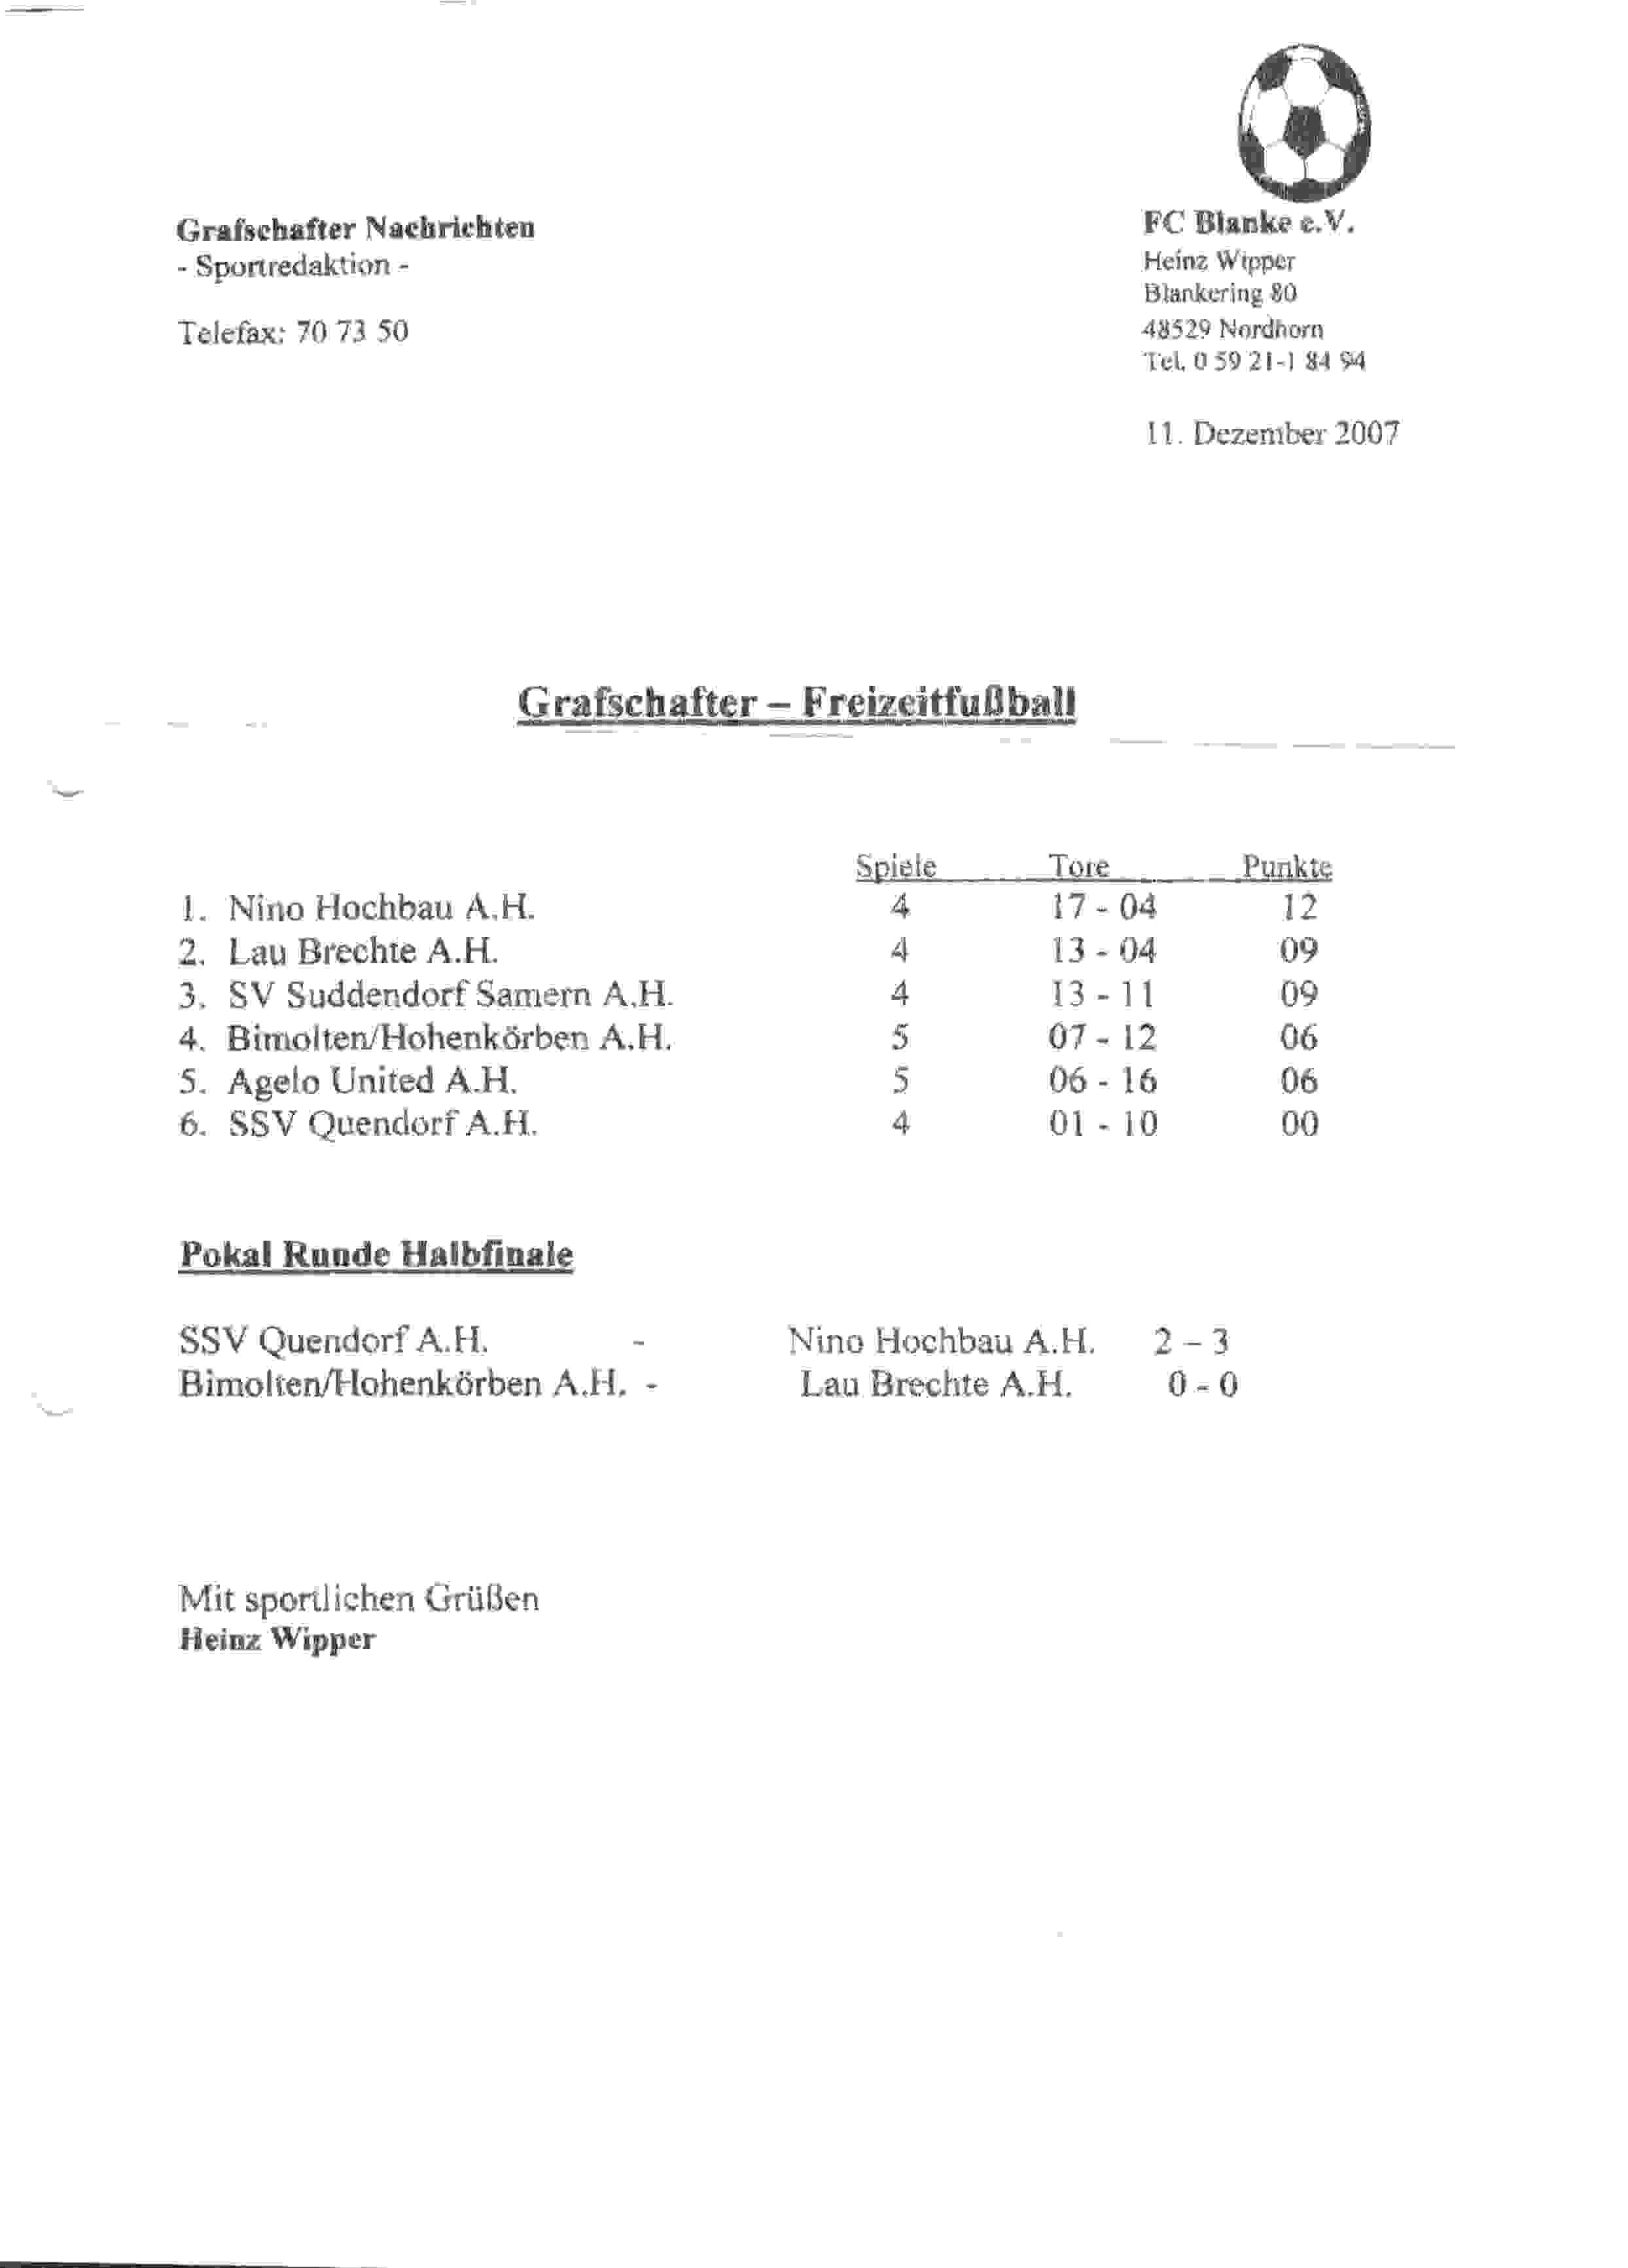 Tussenstand Grafschafter Freizeit Fuβball Liga op 2007-12-11